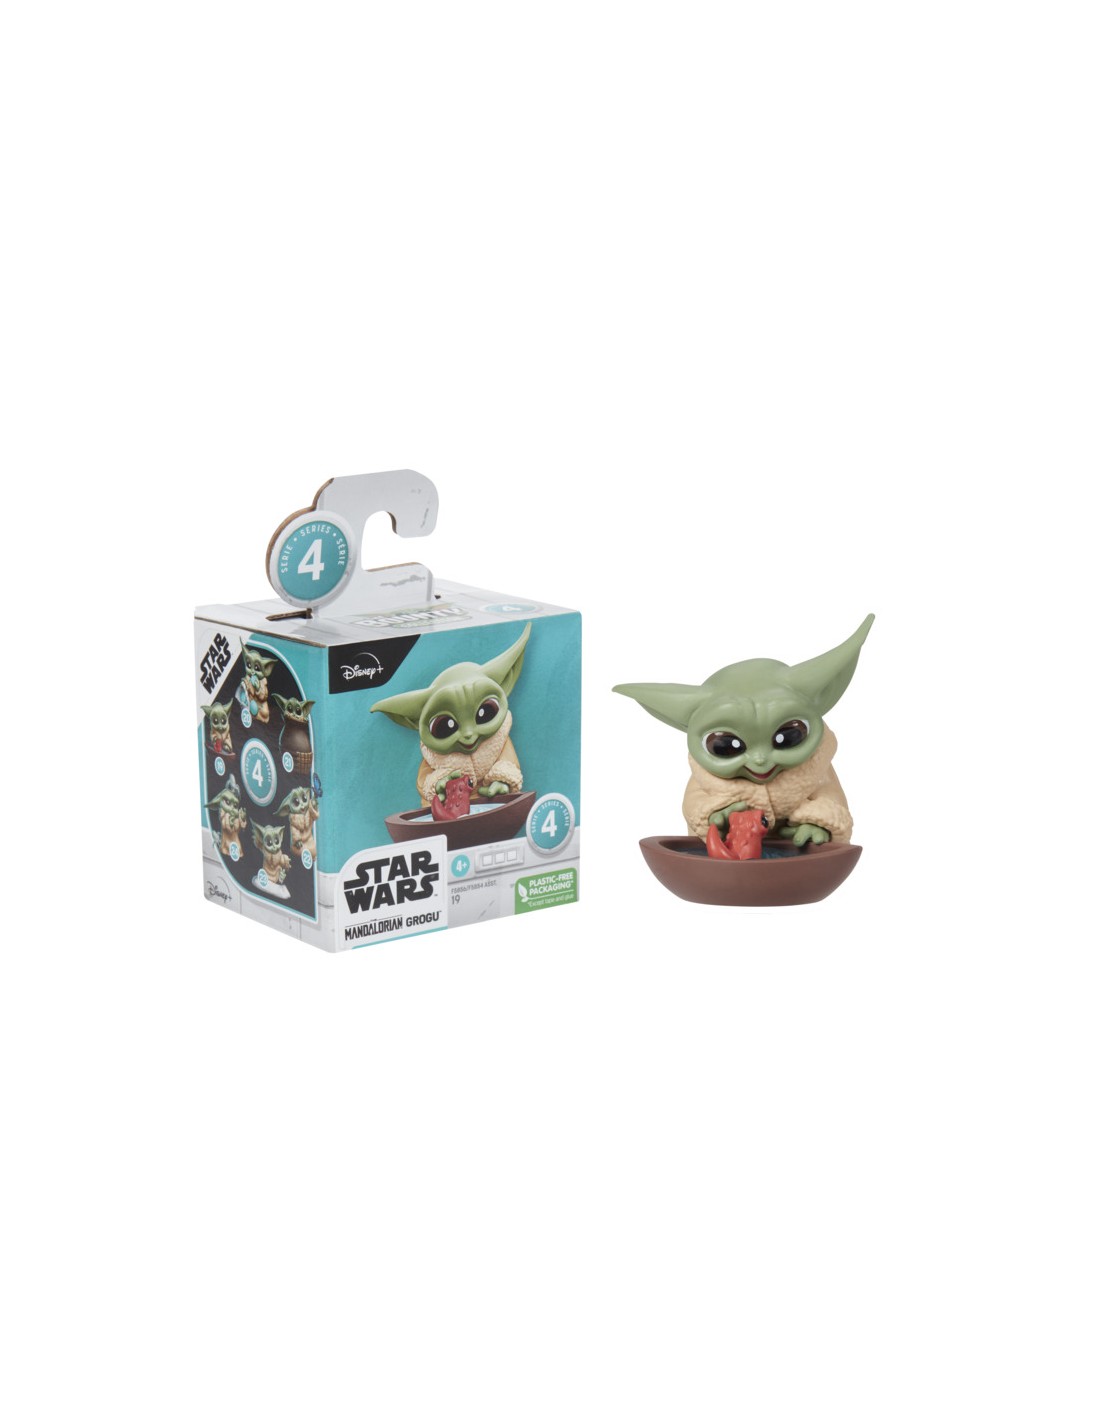 El fenómeno Baby Yoda de Star Wars ya tiene juguetes y productos oficiales